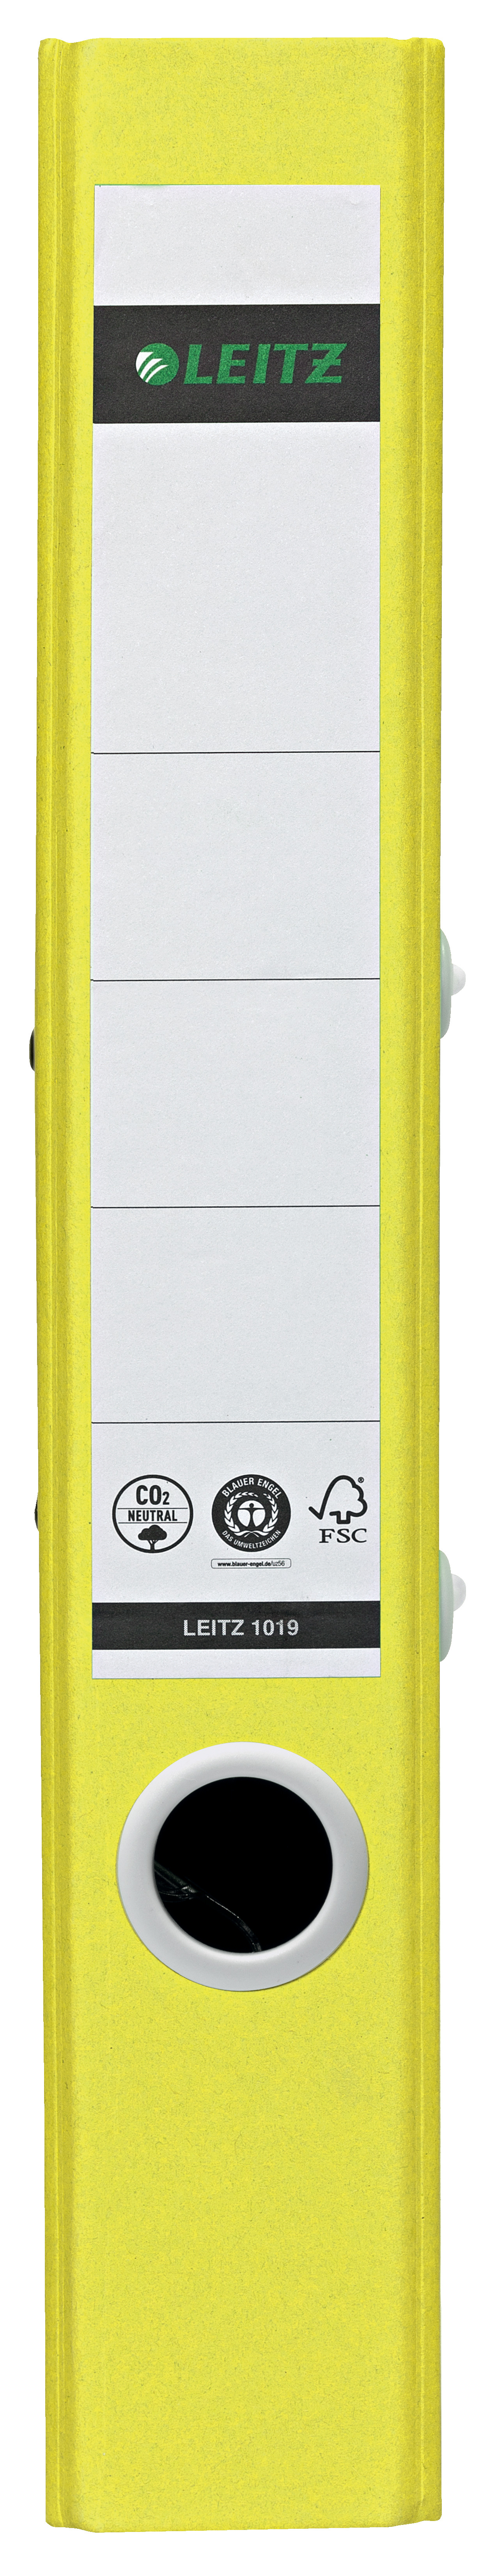 LEITZ Classeur Recycle 5.2cm 1019-00-15 jaune A4